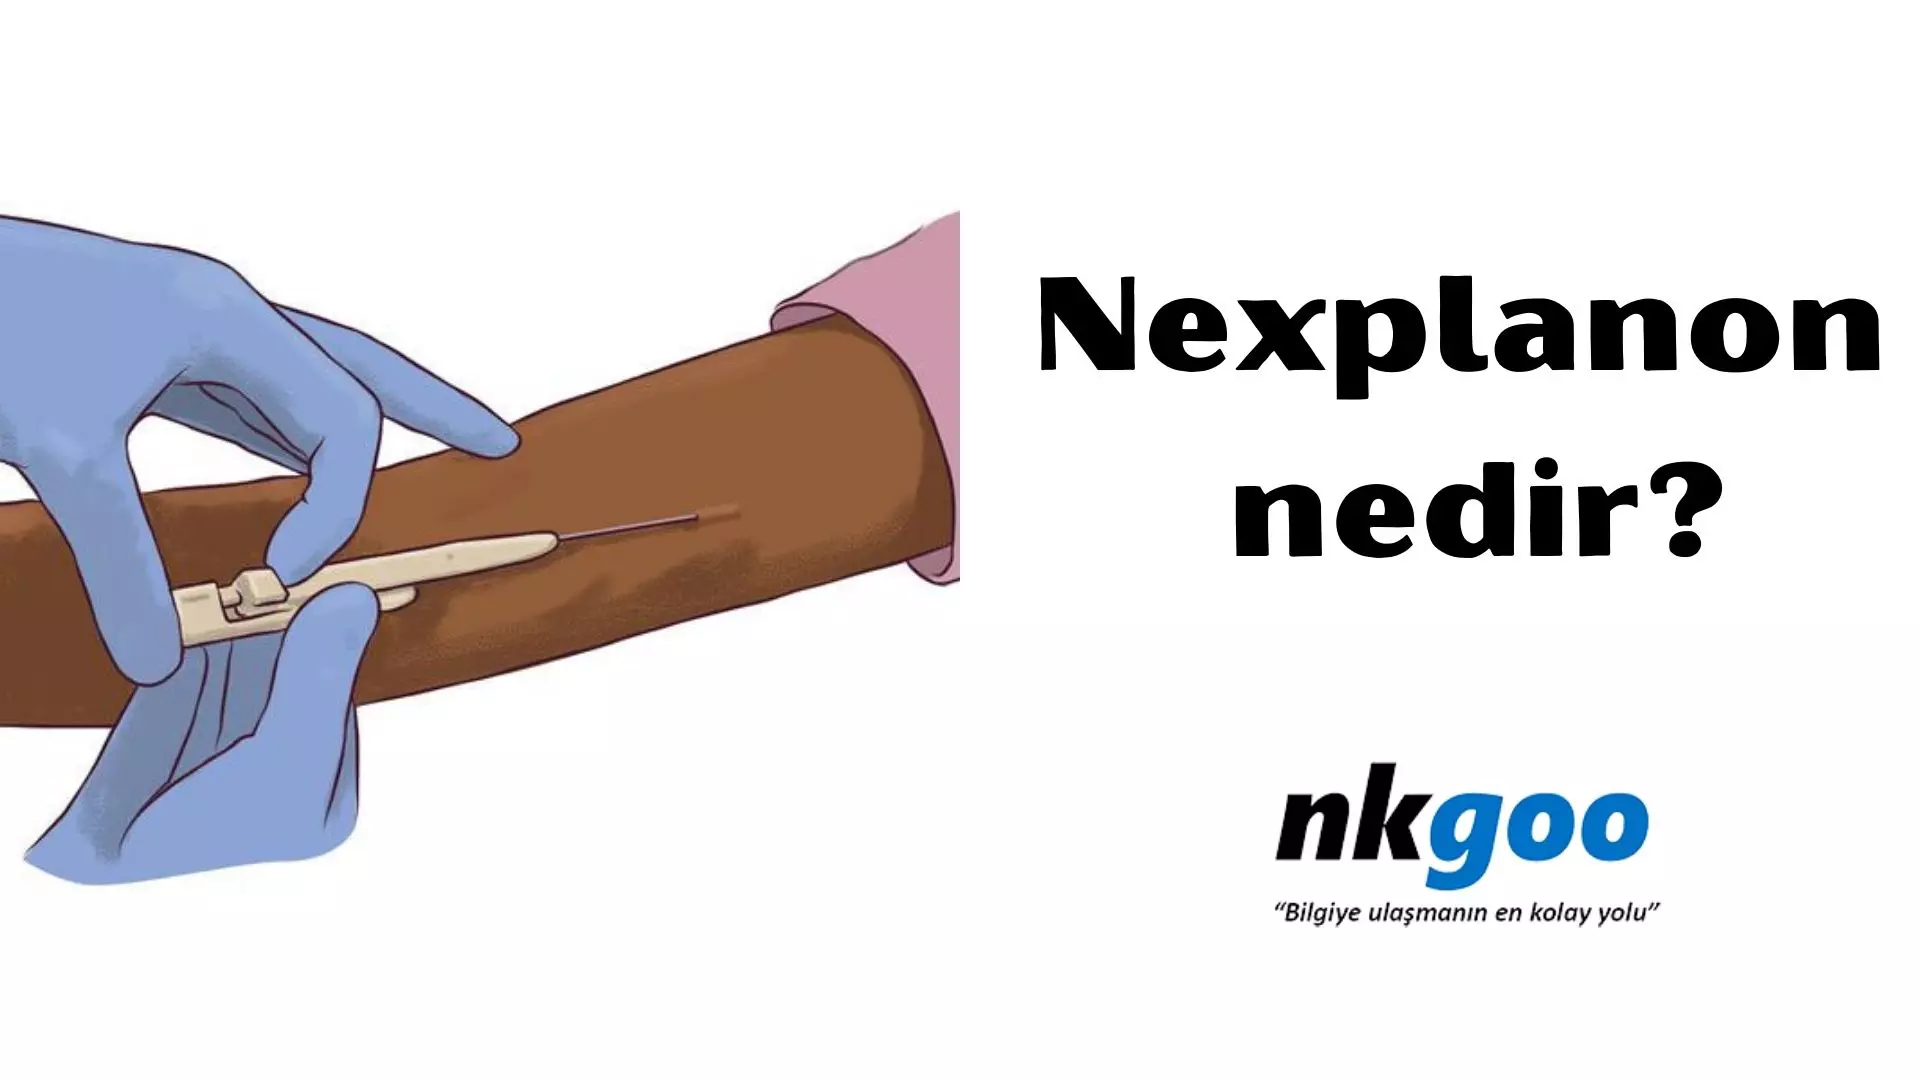 Nexplanon nedir? 5 önemli nokta